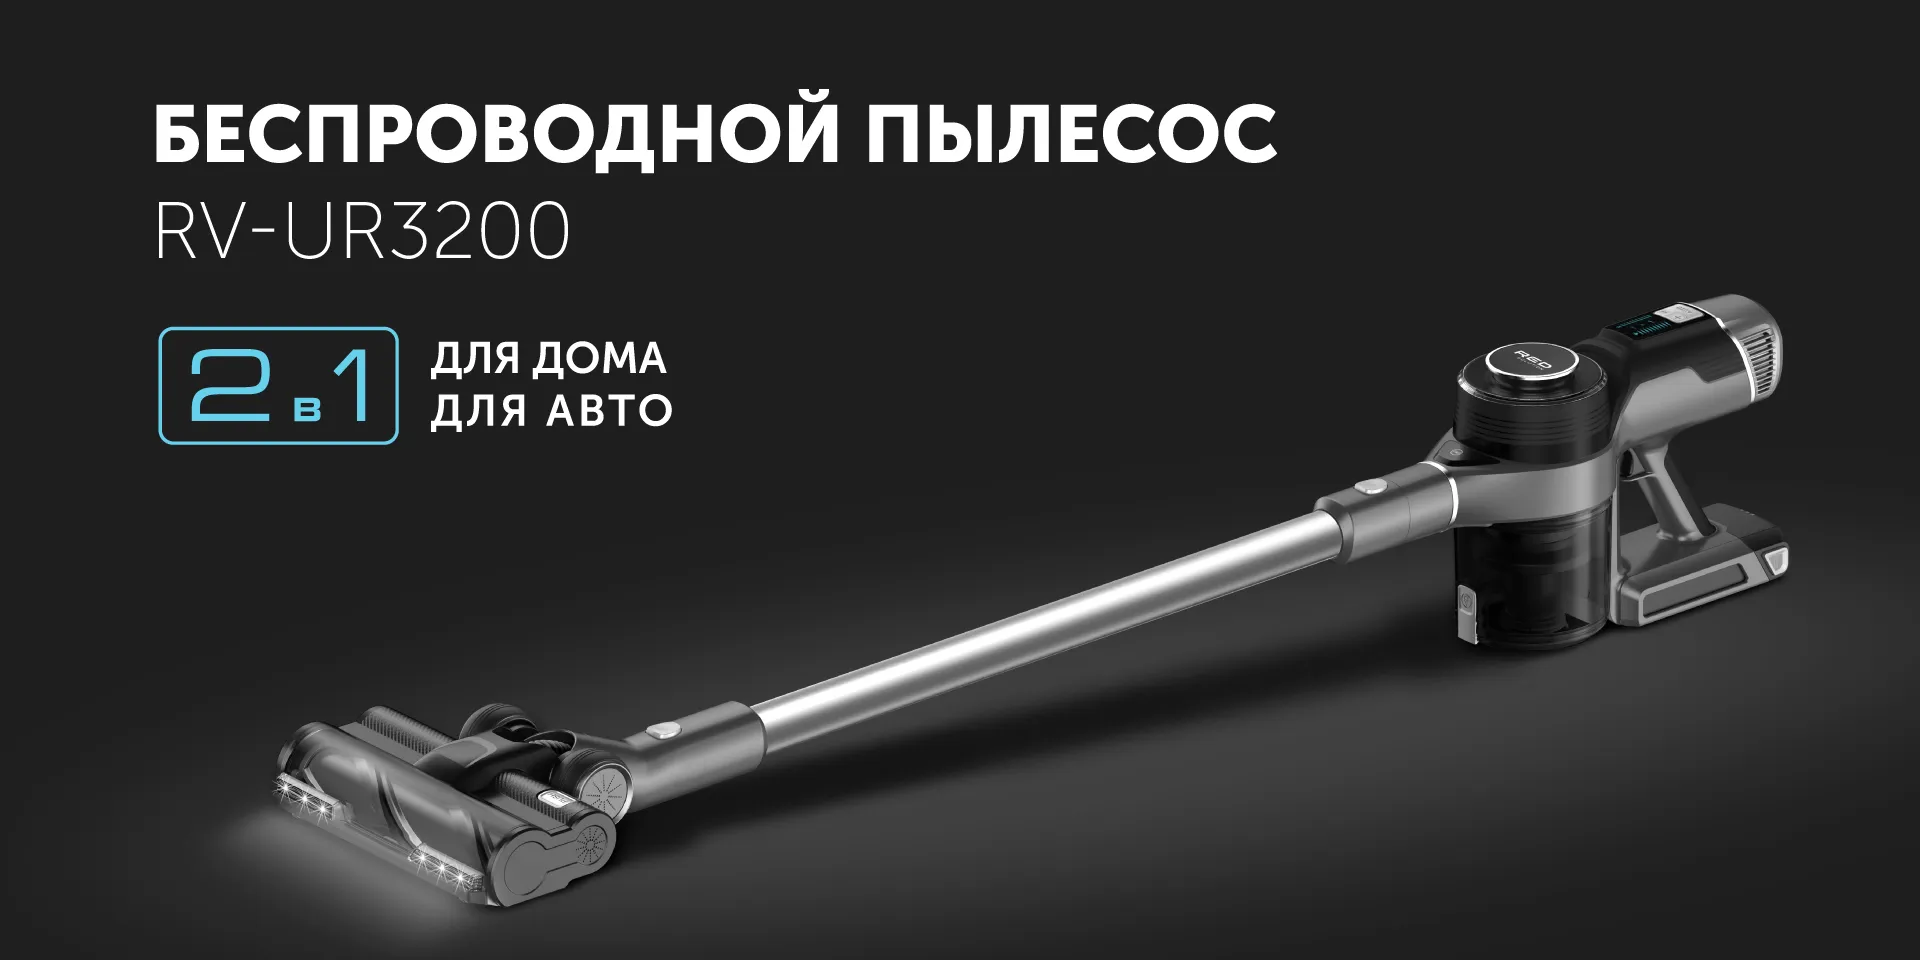 Пылесос беспроводной RED SOLUTION RV-UR3200 купить в Красноярске